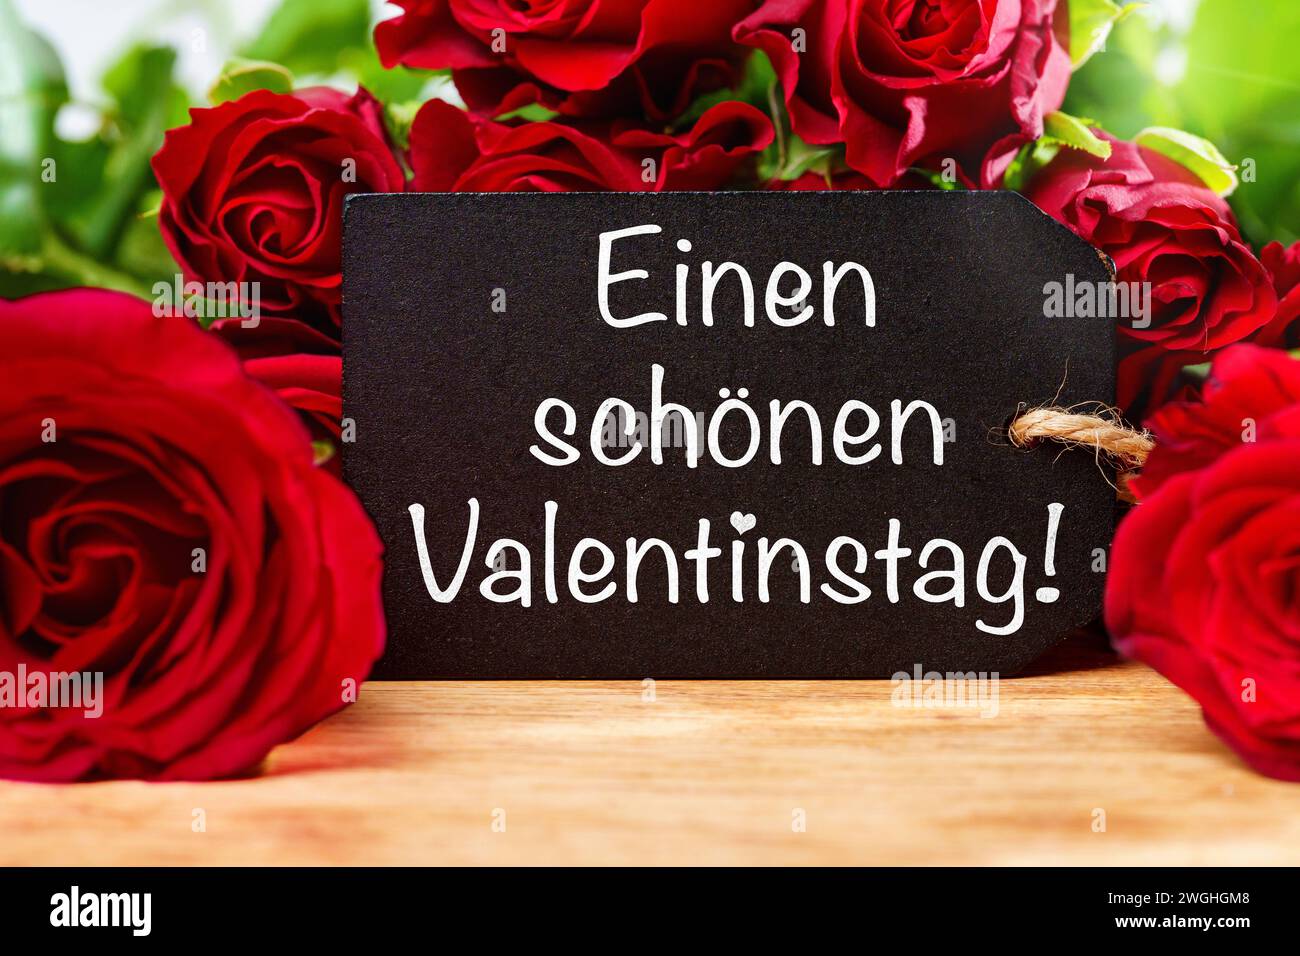 5 febbraio 2024: Saluto di San Valentino su un cartello di fronte alle rose rosse FOTOMONTAGE *** einen schönen Valentinstag Gruß auf einem Schild vor roten Rosen FOTOMONTAGE Foto Stock